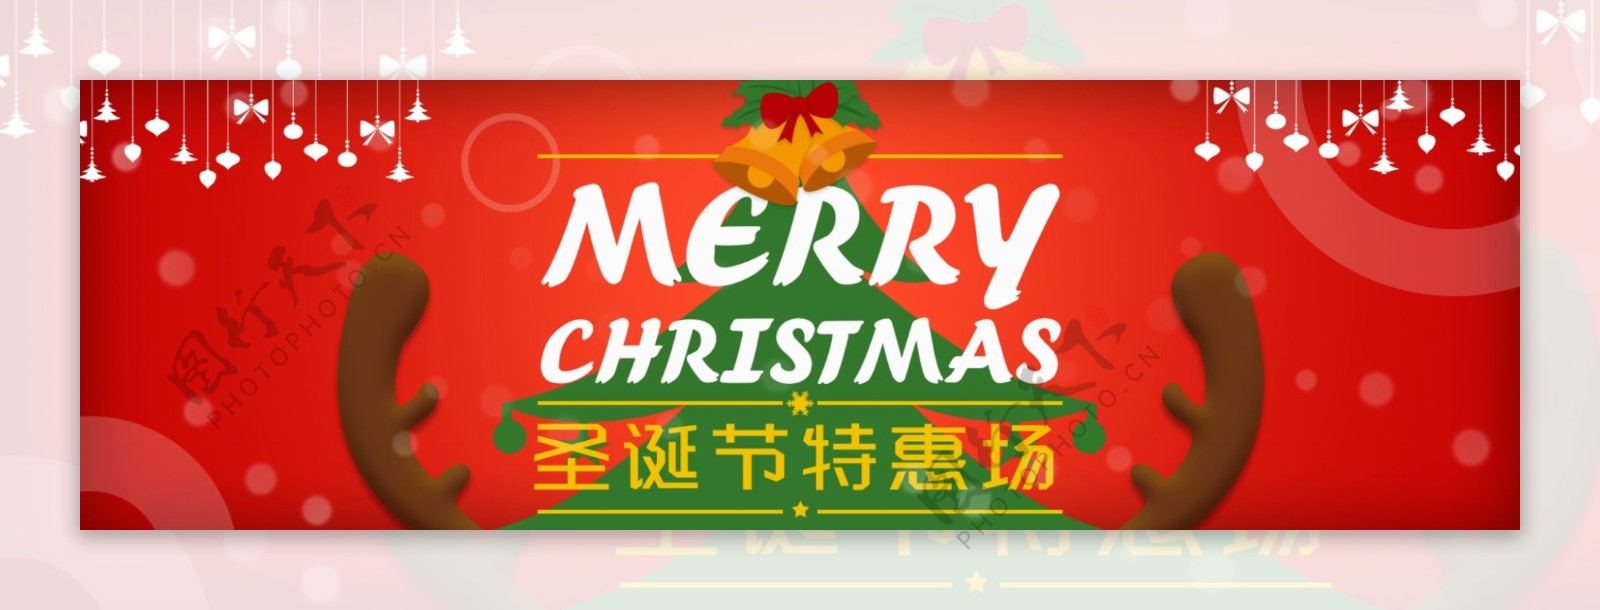 圣诞节红色淘宝天猫电商海报模板圣诞树